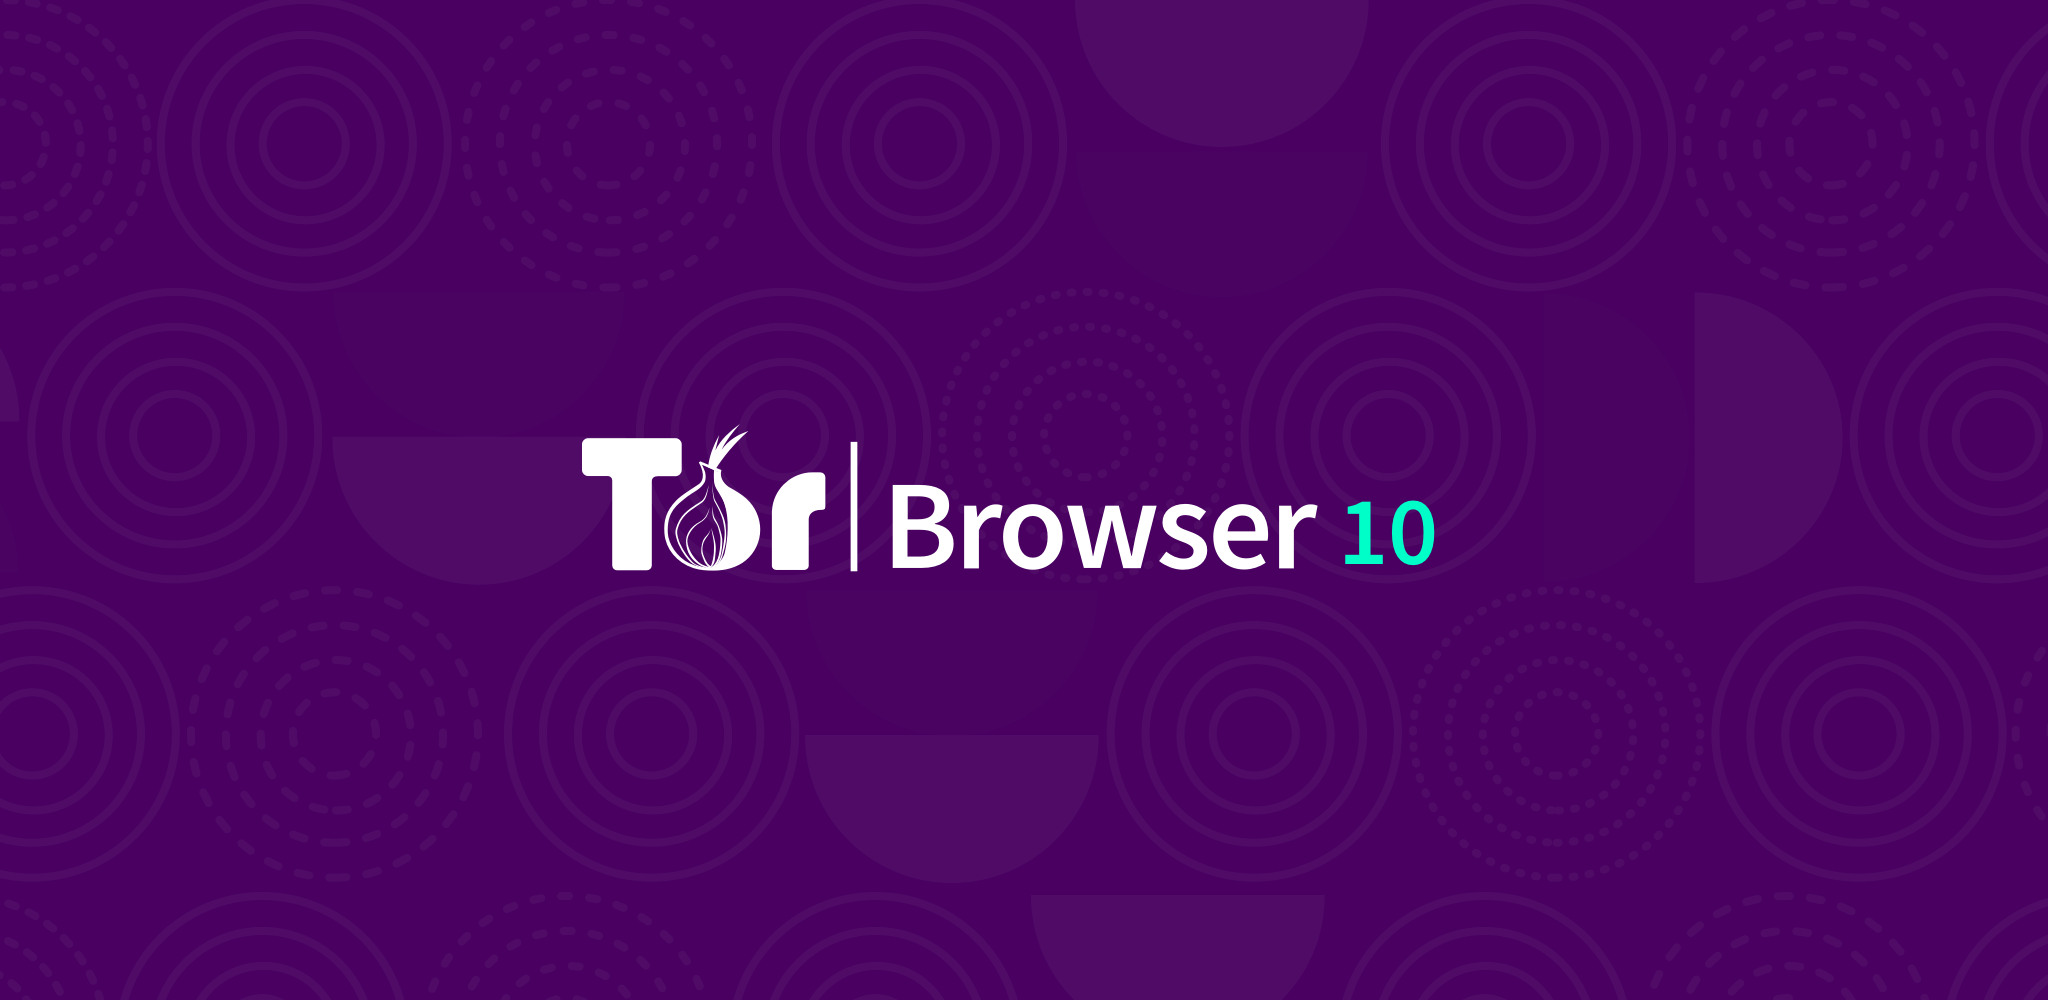 Tor browser time megaruzxpnew4af tor browser 64 bit download megaruzxpnew4af